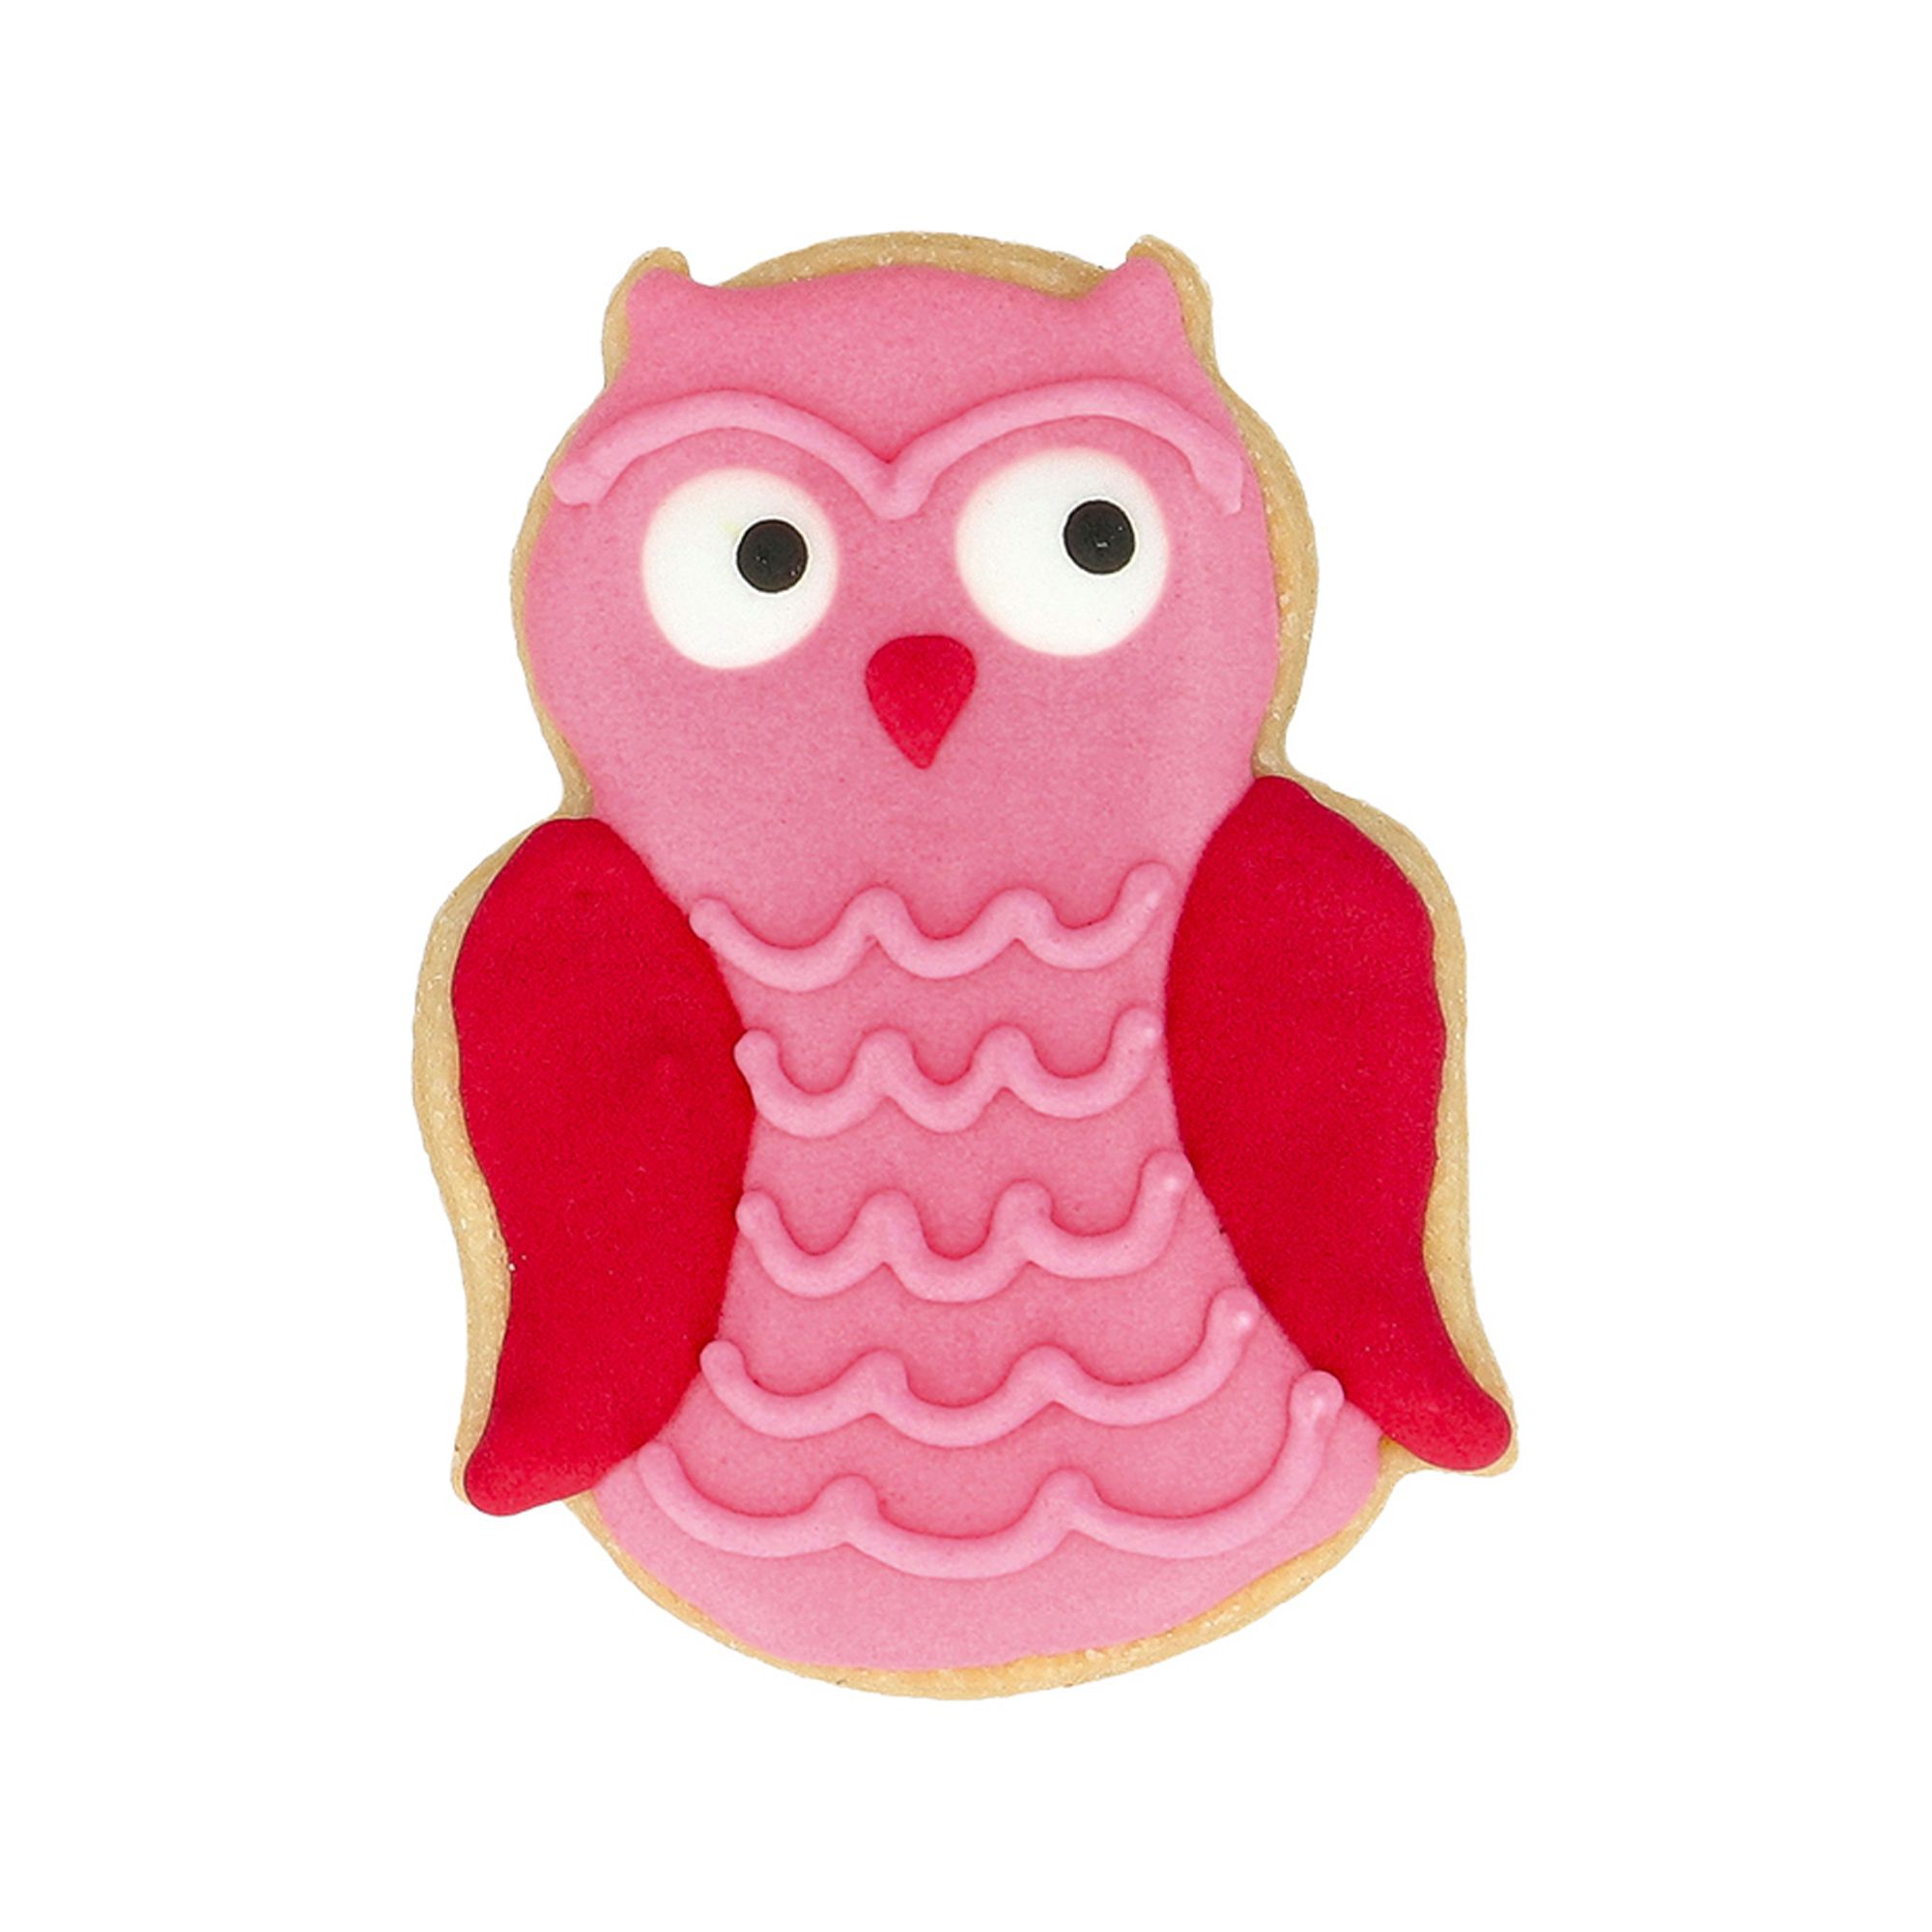 Birkmann - Cookie cutter - small owl 6 cm